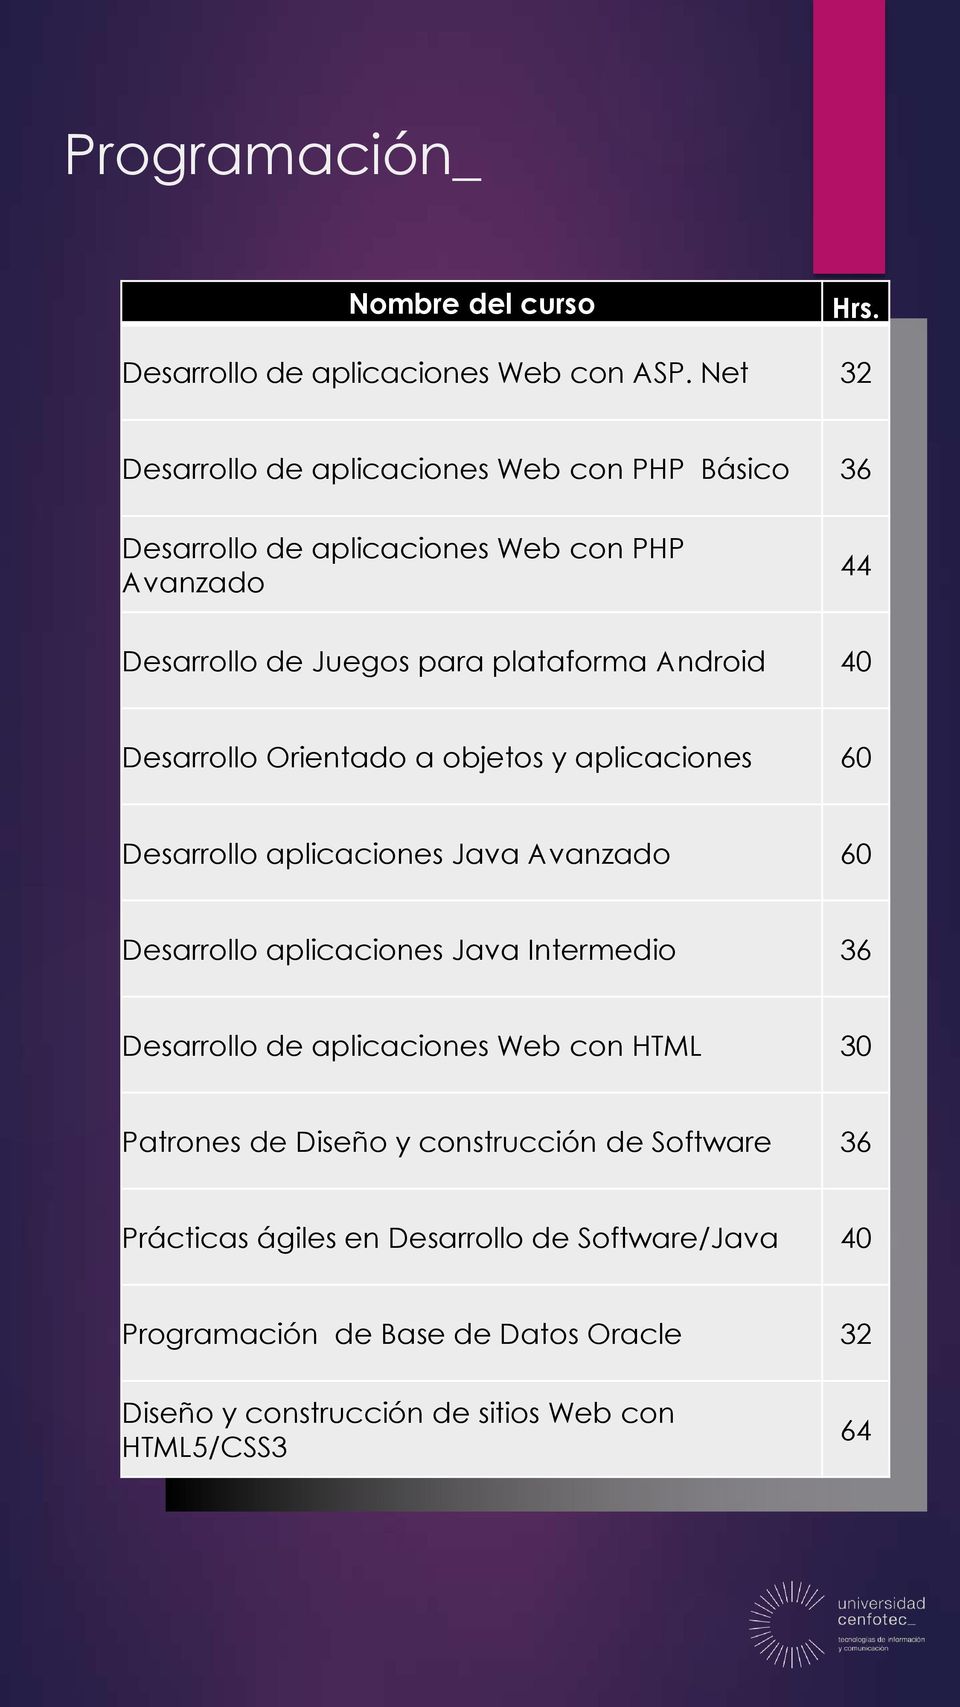 Android 40 Desarrollo Orientado a objetos y aplicaciones 60 Desarrollo aplicaciones Java Avanzado 60 Desarrollo aplicaciones Java Intermedio 36